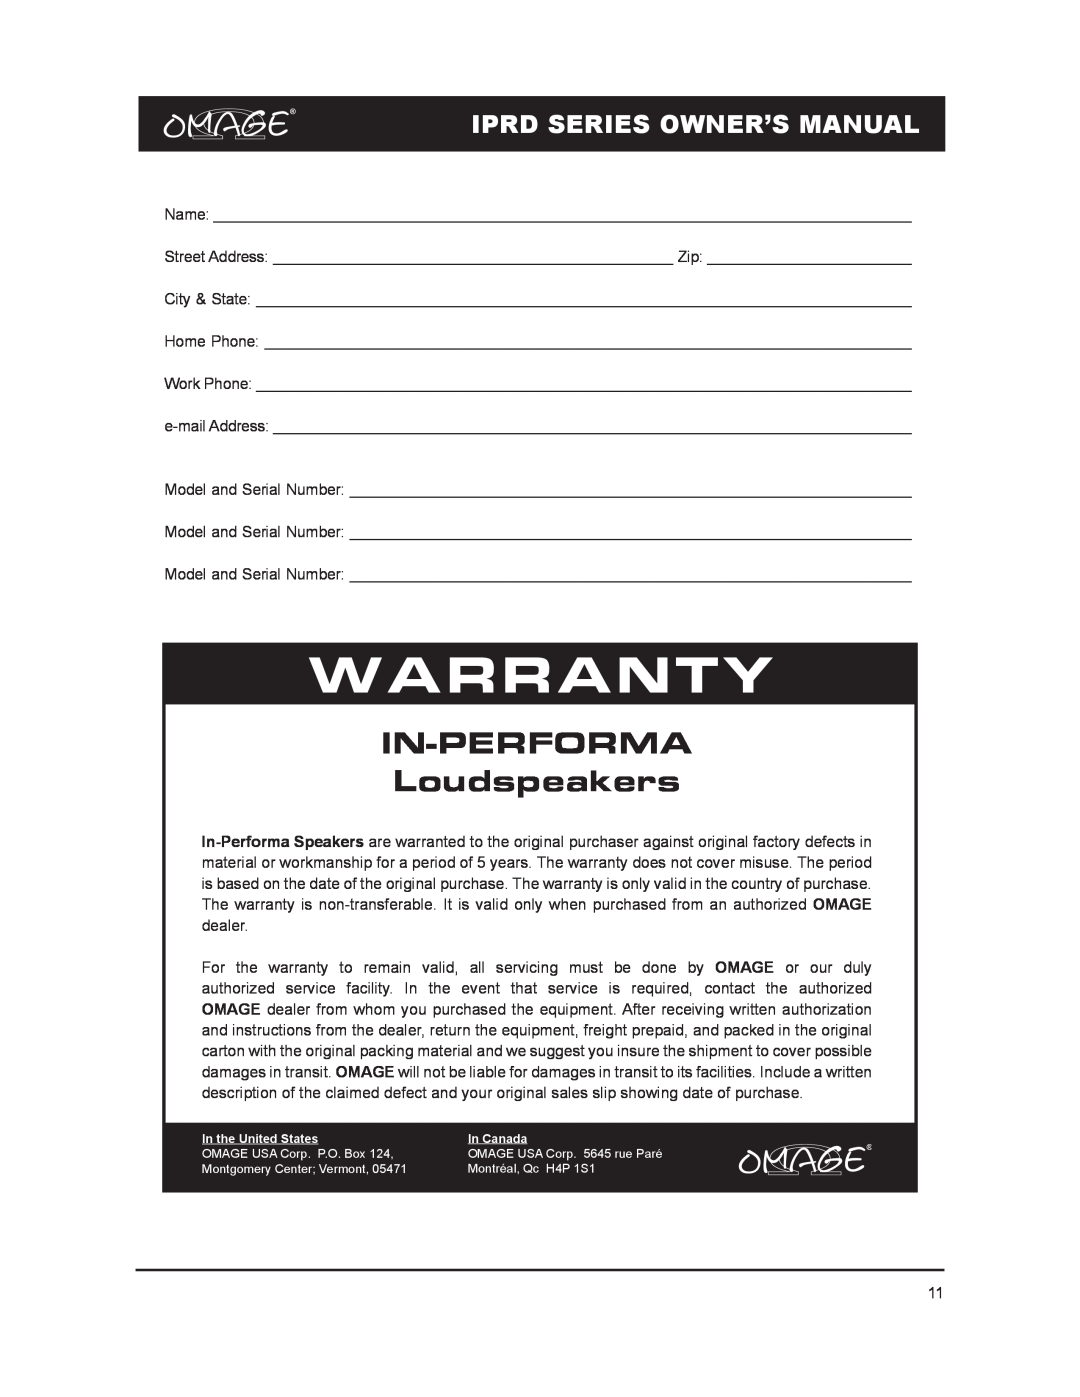 Omage IPRD8 owner manual Warranty, IN-PERFORMA Loudspeakers 